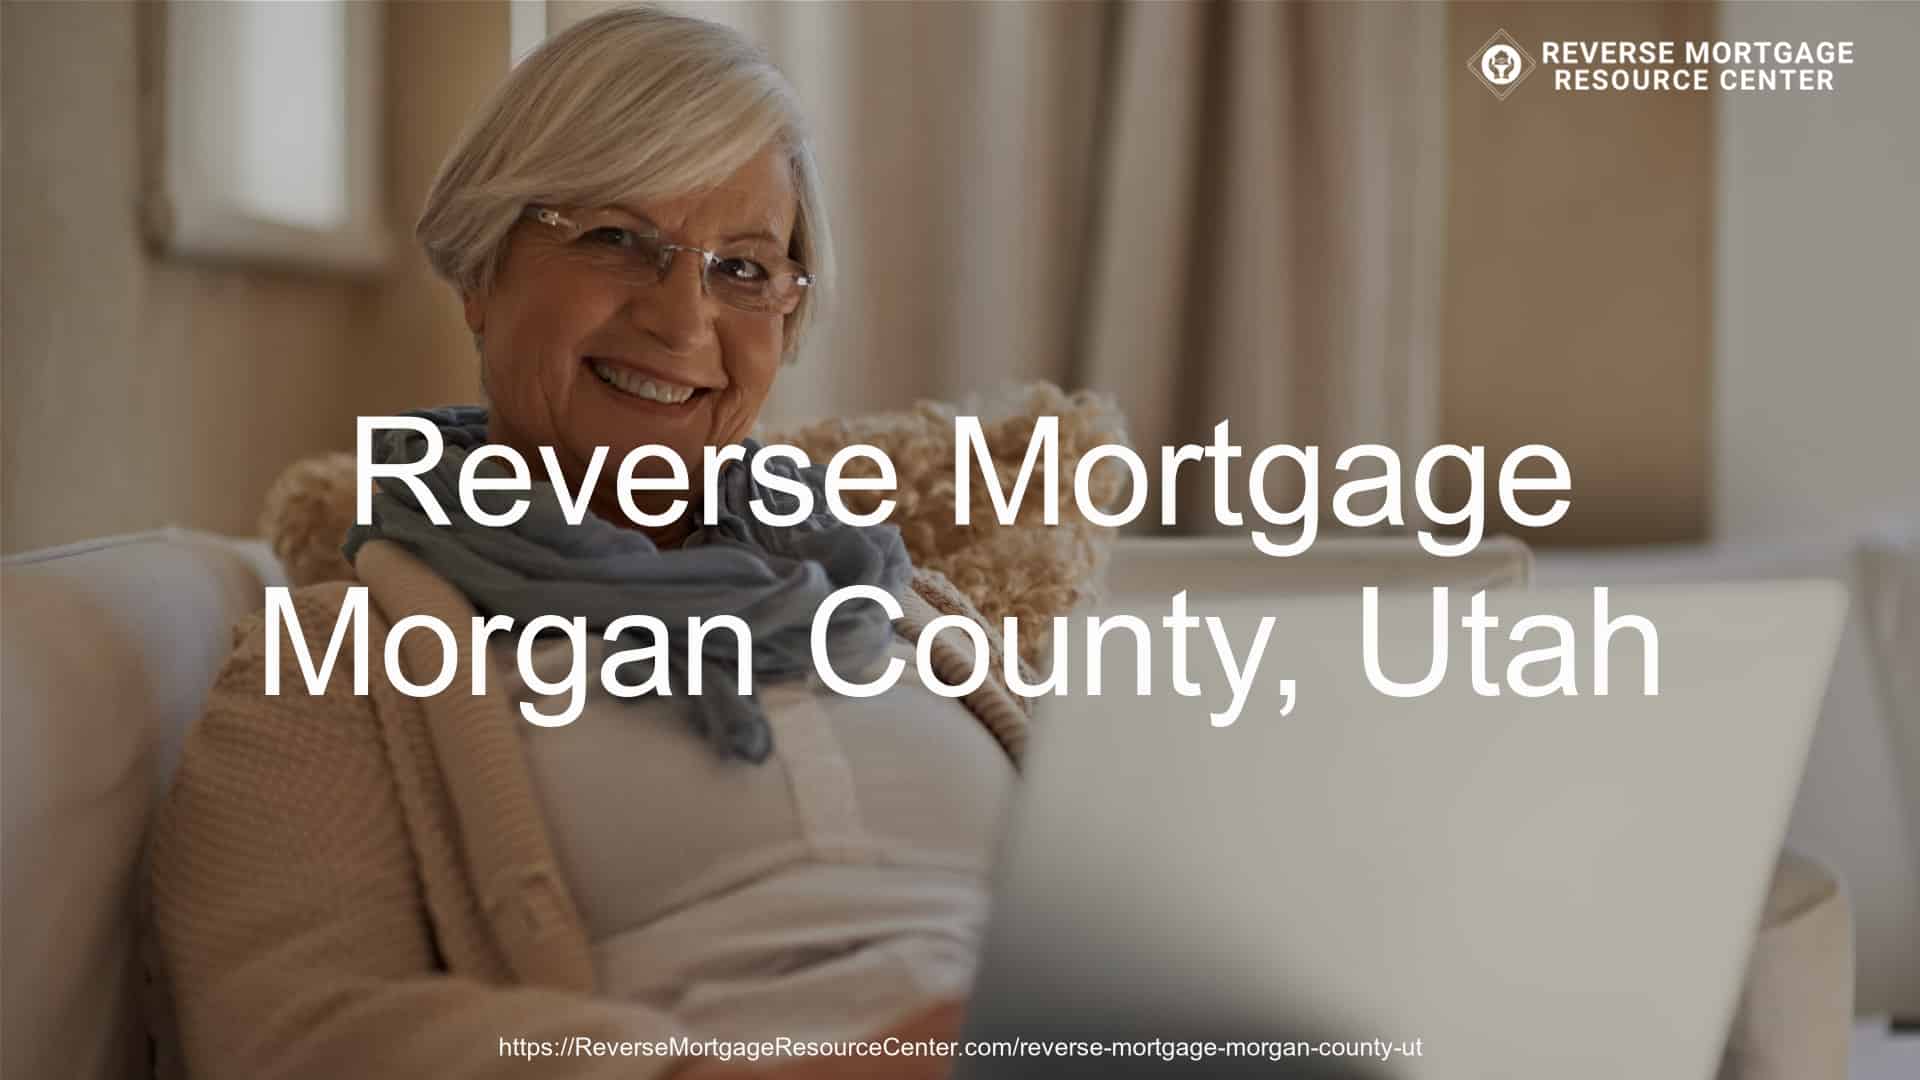 Reverse Mortgage Loans in Morgan County Utah